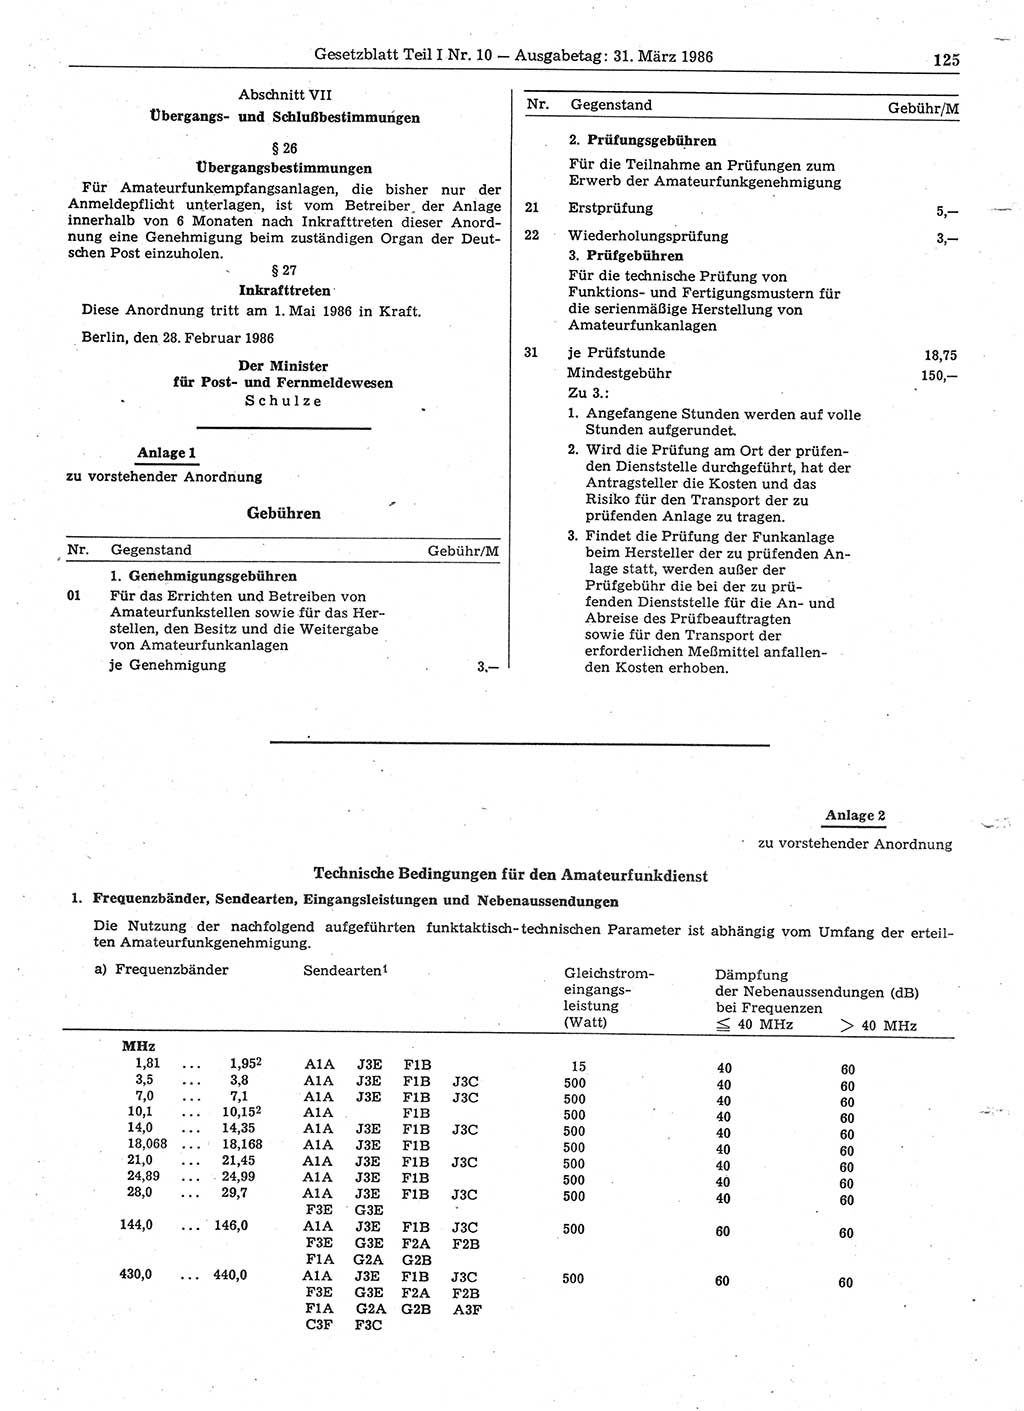 Gesetzblatt (GBl.) der Deutschen Demokratischen Republik (DDR) Teil Ⅰ 1986, Seite 125 (GBl. DDR Ⅰ 1986, S. 125)